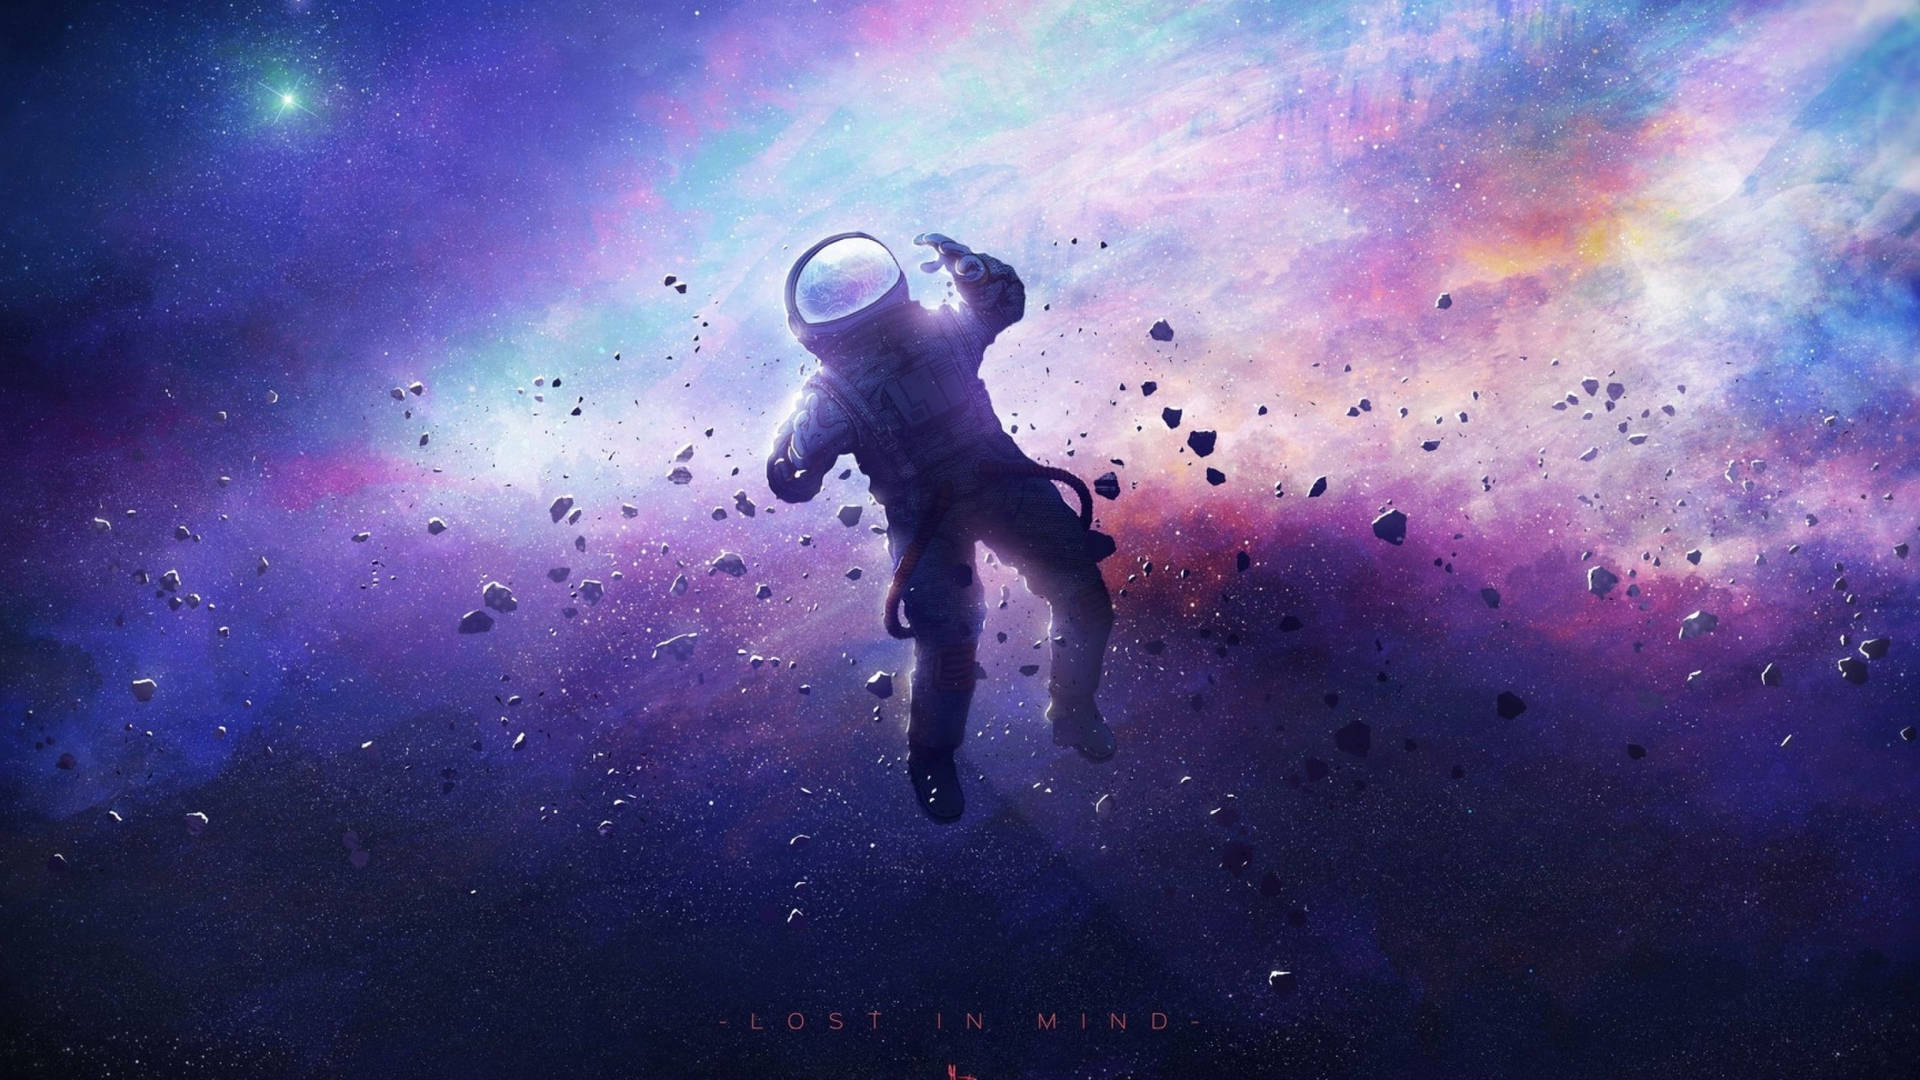 Astronautverloren Im Weltraum 2560x1440 Wallpaper